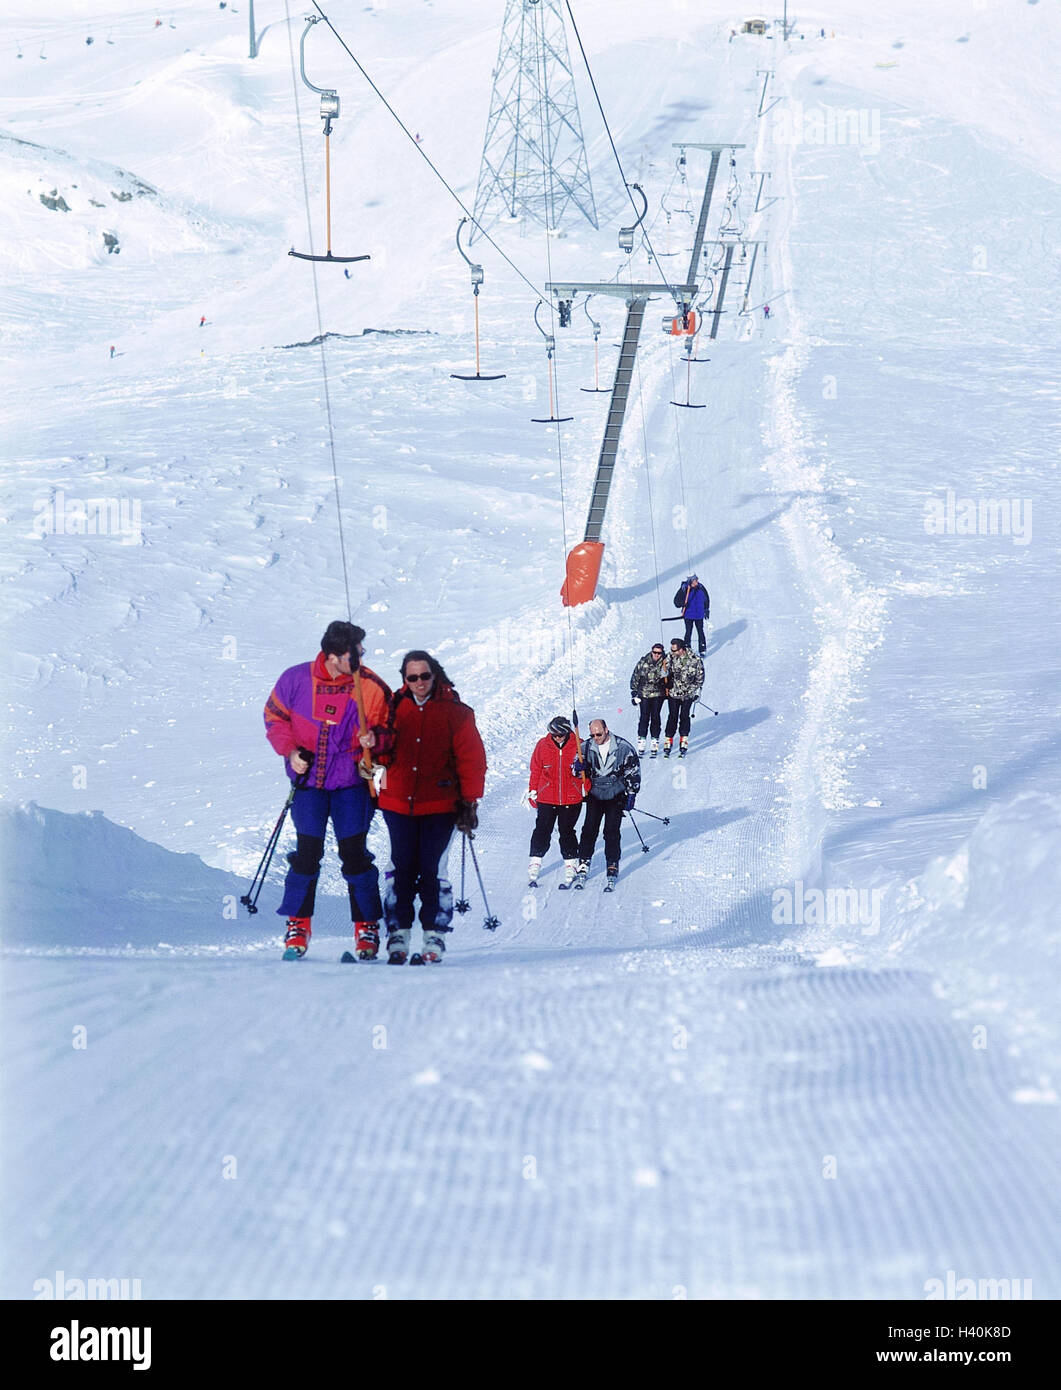 Austria, Tirolo, ghiacciaio Stubaier, sciatore, trainato sollevare, Inverno Comprensorio sport invernali, sport invernali, vacanze sugli sci, ski-lift, vacanziere, turistico, sport, sportily, sci Foto Stock